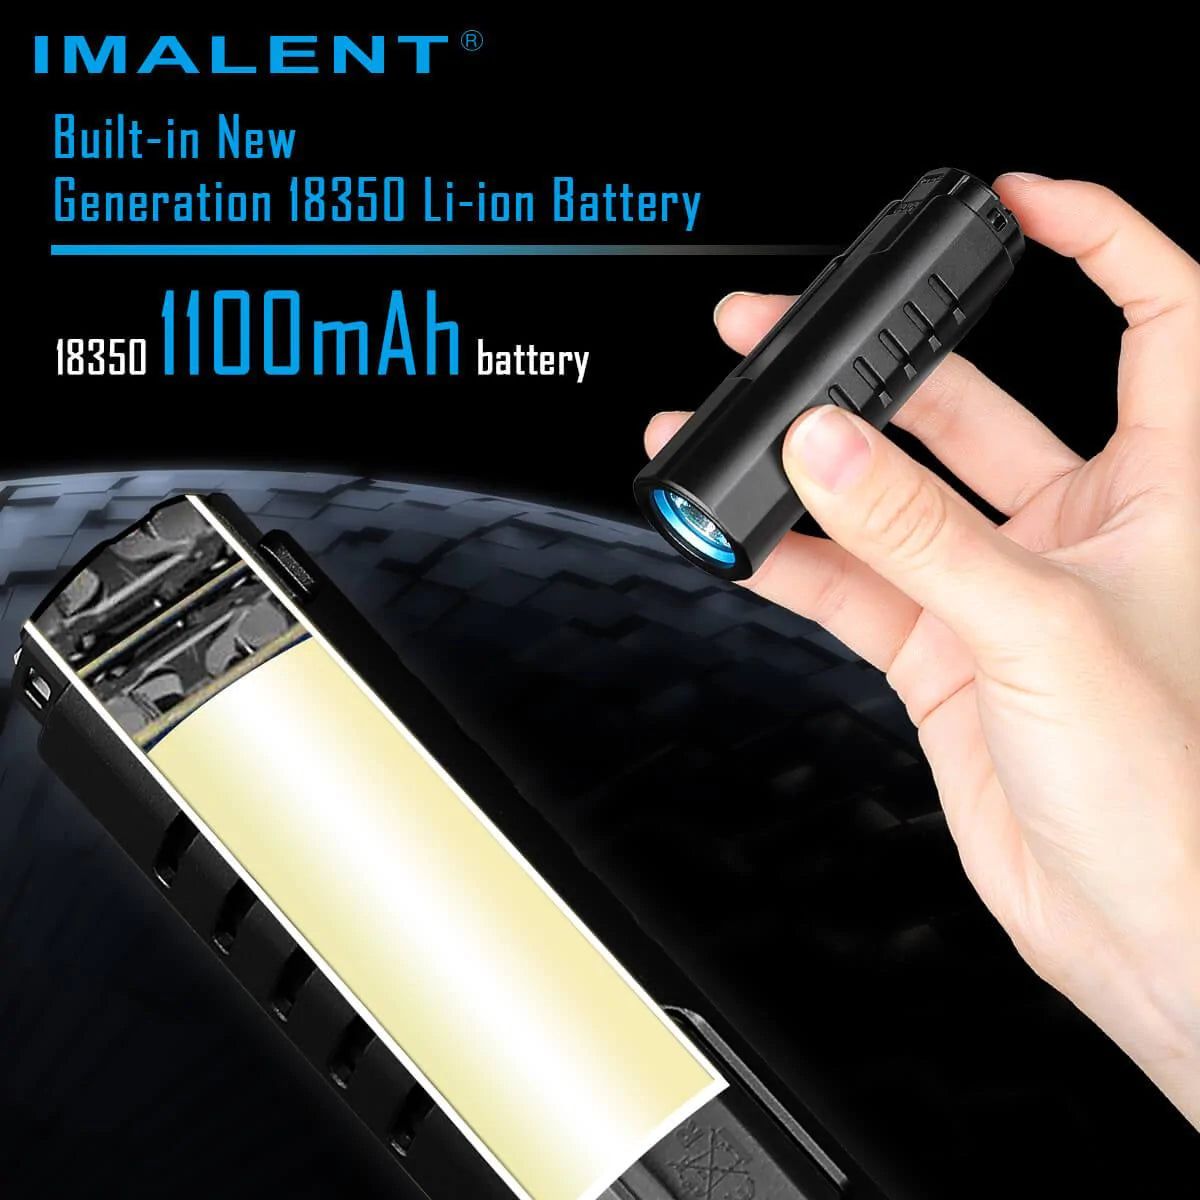 Imalent LD70 4000 lumen EDC flashlight